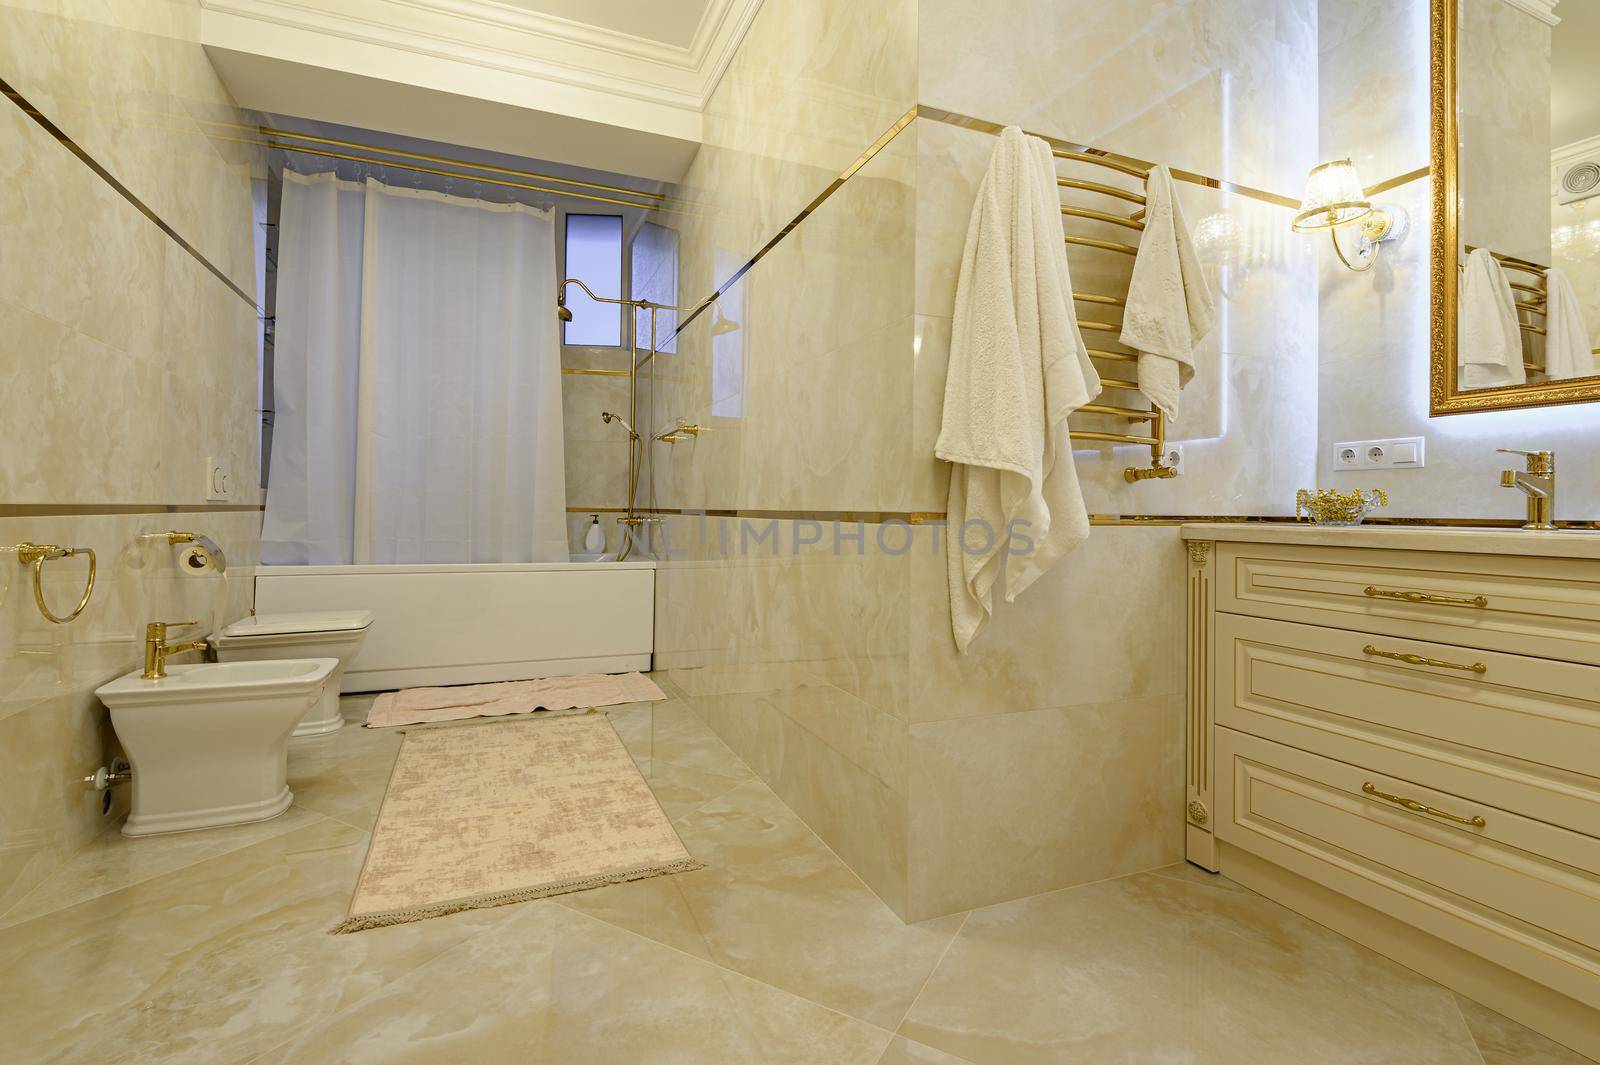 Modern luxury beige and golden bathroom with mirror, toilet, bidet and bathtub